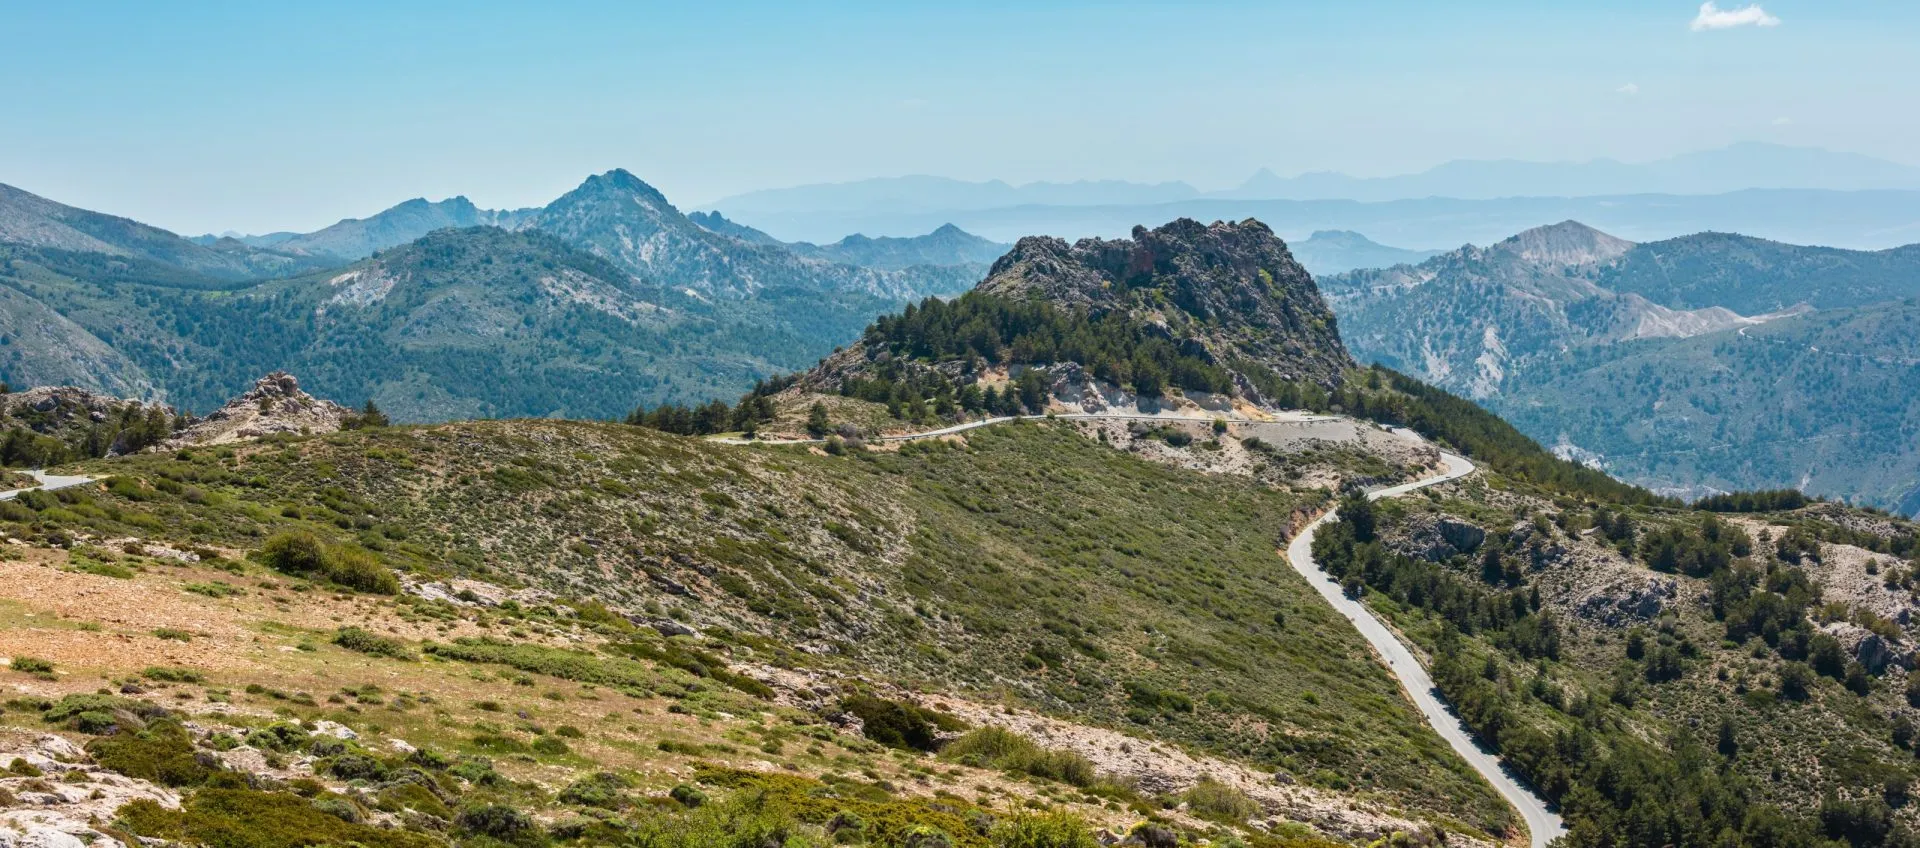 Sierra Nevada nasjonalpark, Spania.